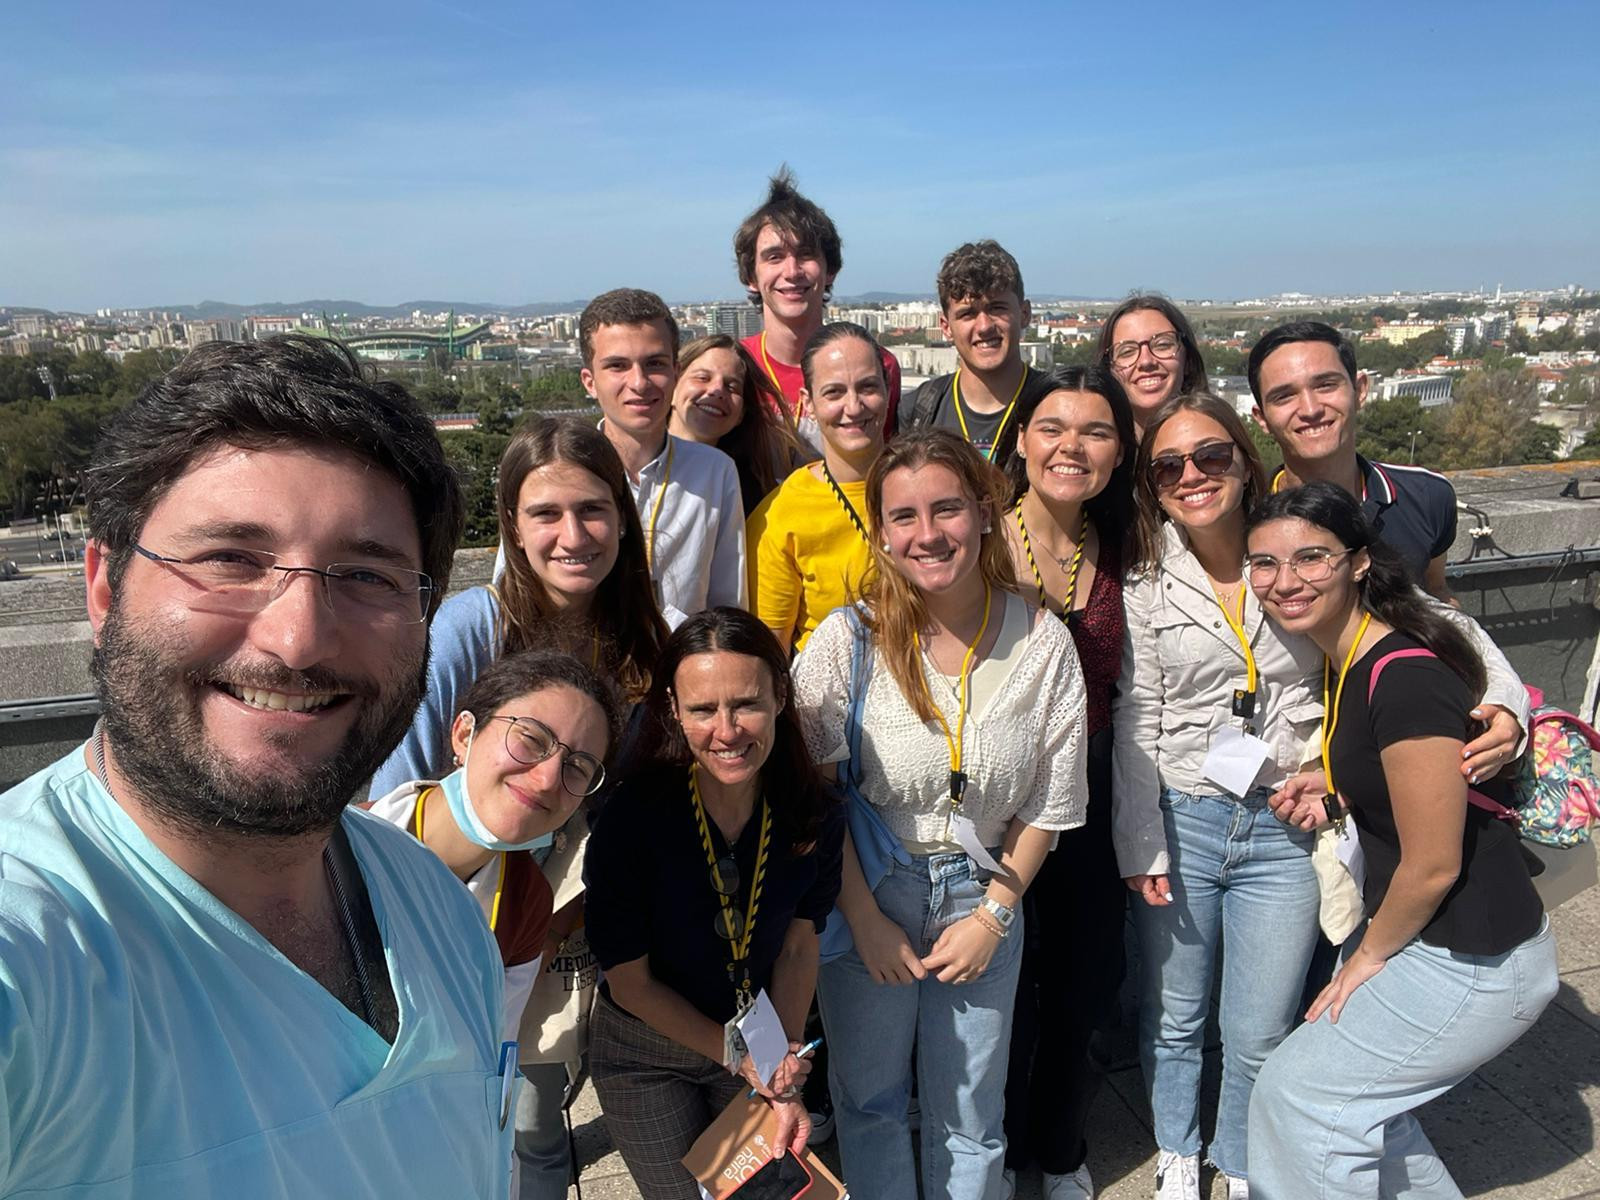 médica tira selfie com os estudantes que visitaram o hospital